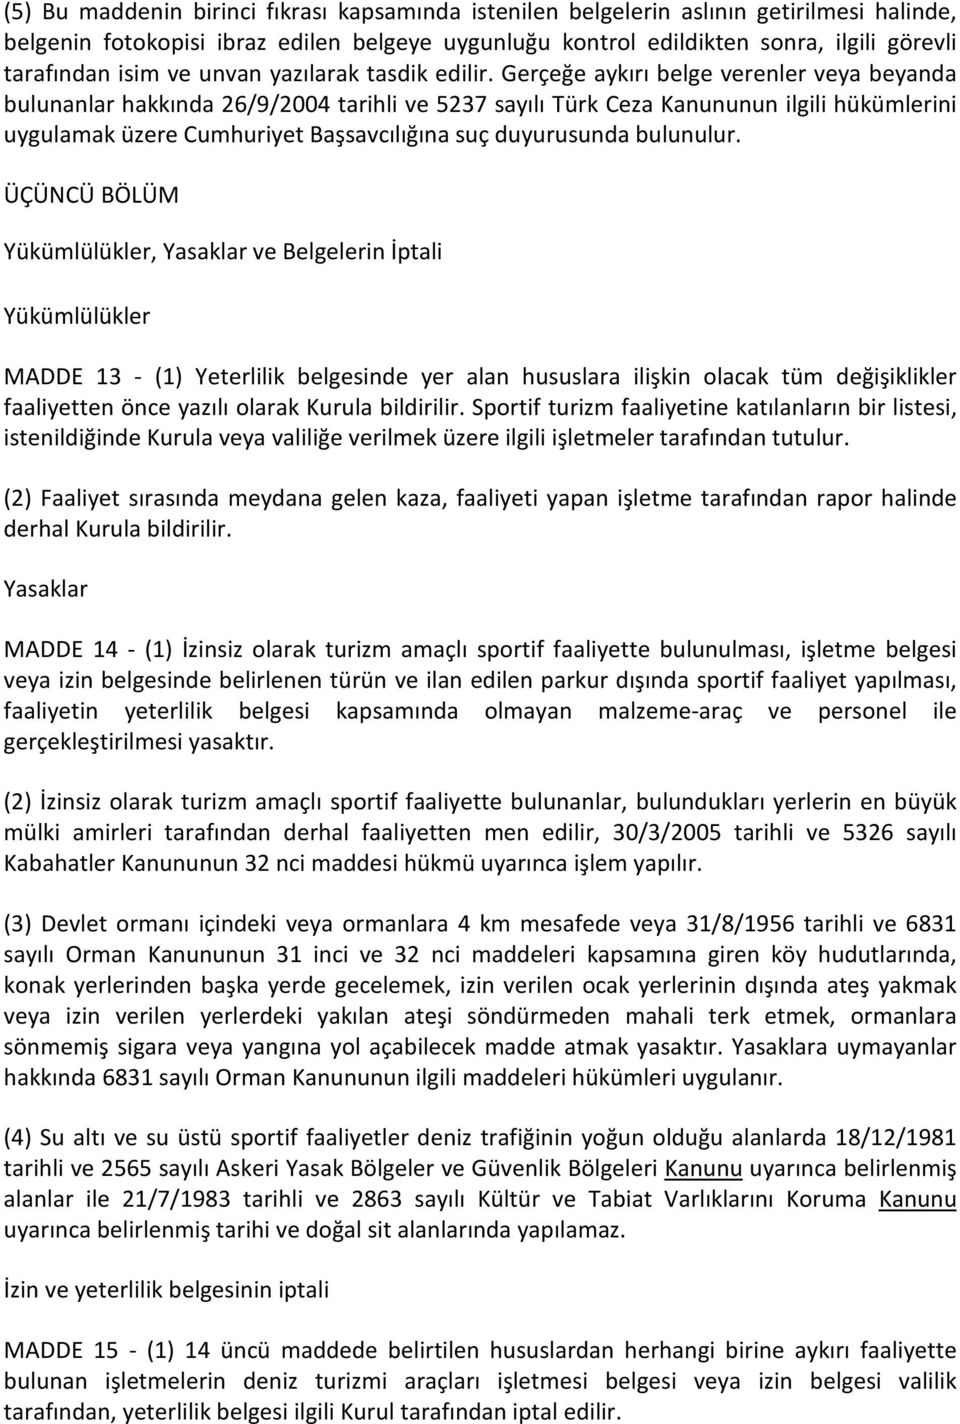 Gerçeğe aykırı belge verenler veya beyanda bulunanlar hakkında 26/9/2004 tarihli ve 5237 sayılı Türk Ceza Kanununun ilgili hükümlerini uygulamak üzere Cumhuriyet Başsavcılığına suç duyurusunda